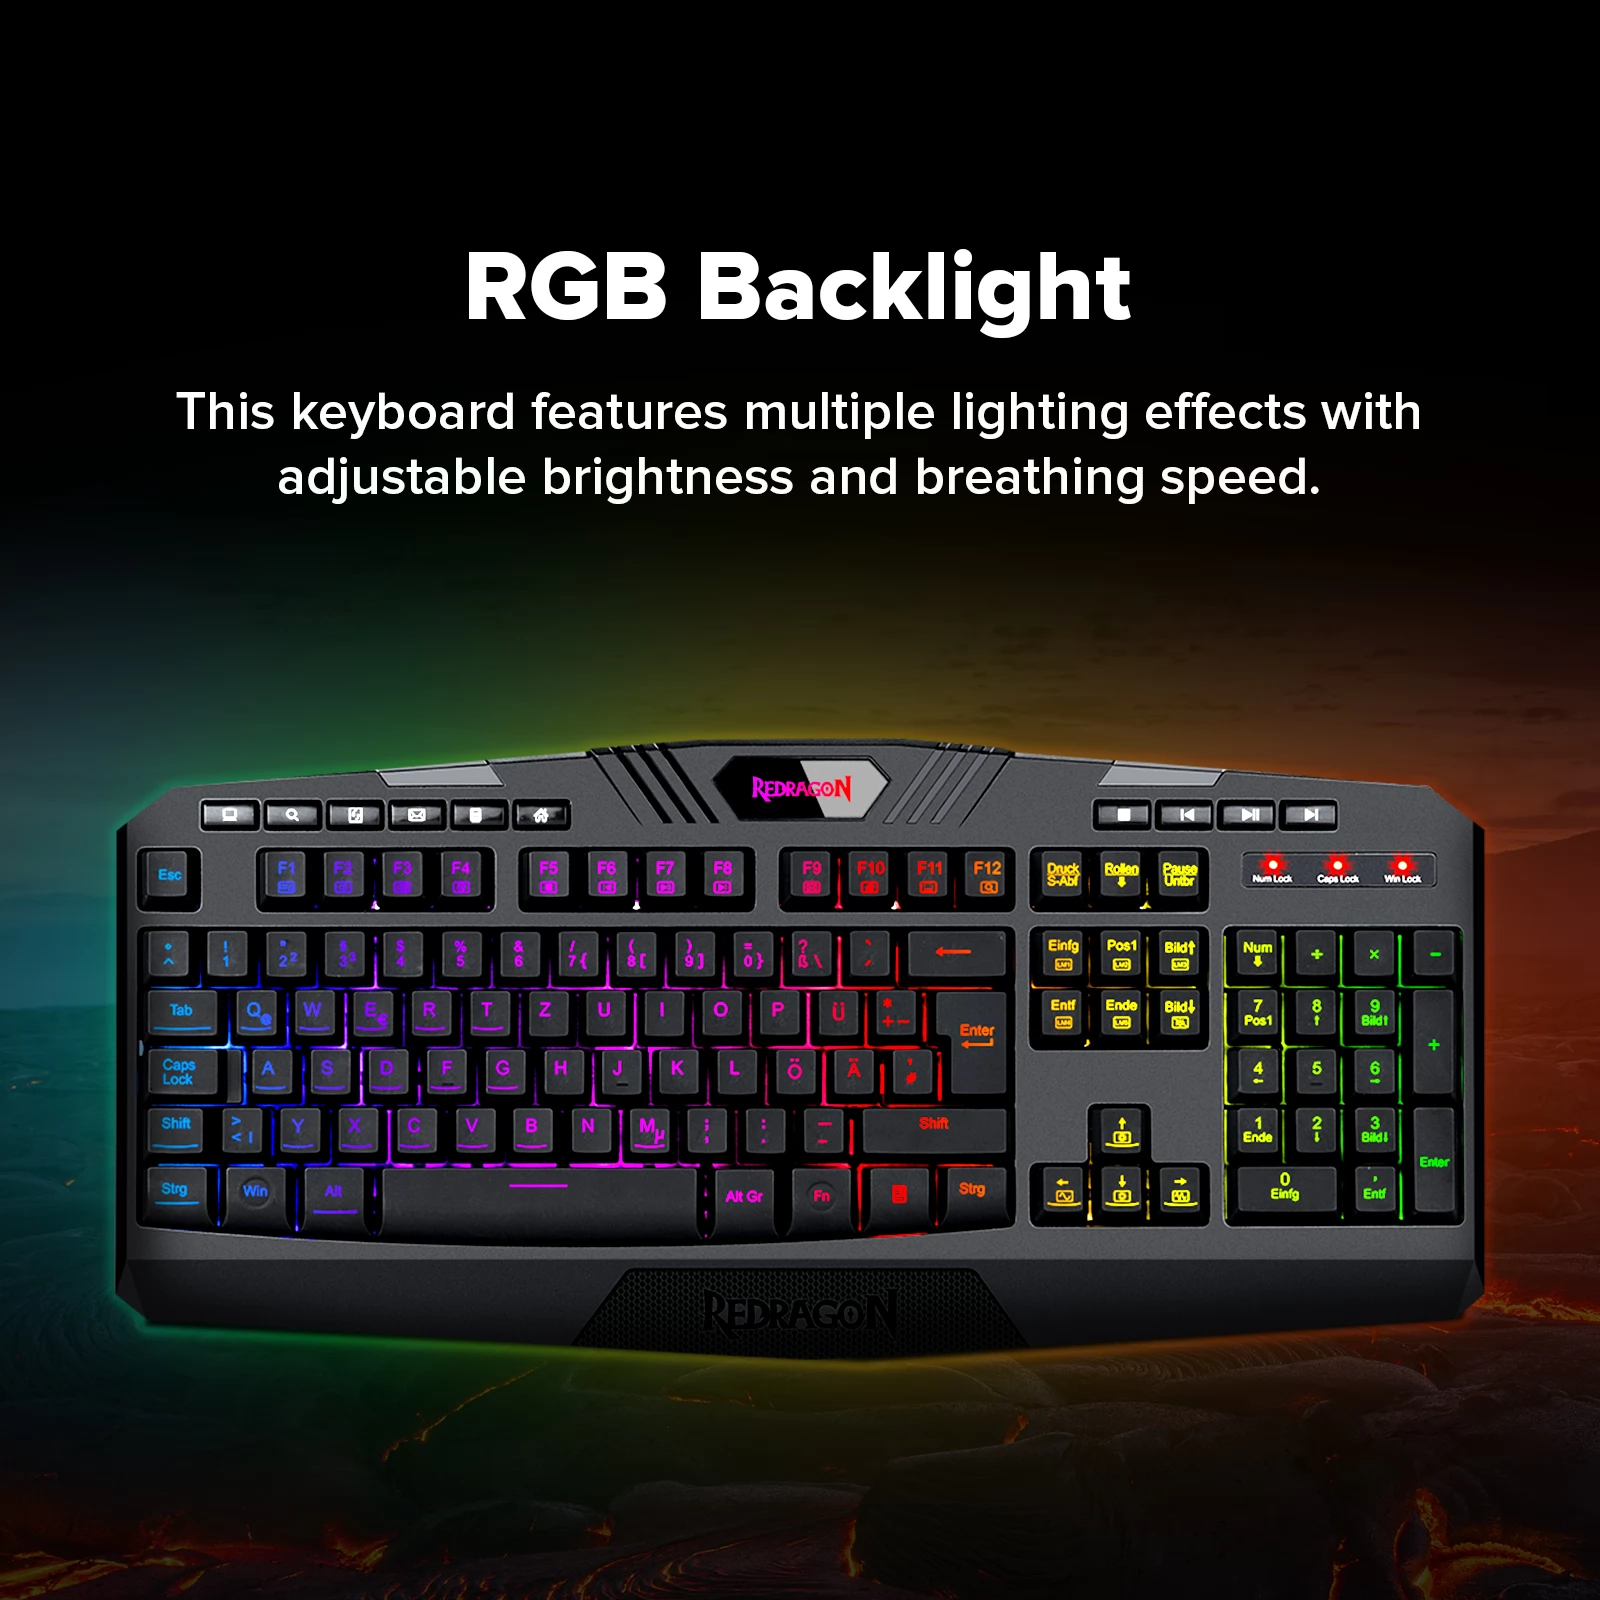 Redragon S101-K Kabelgebundene Tastatur- Und Mauskombination, RGB-Tastatur Mit Hintergrundbeleuchtung, 4200-DPI-Maus